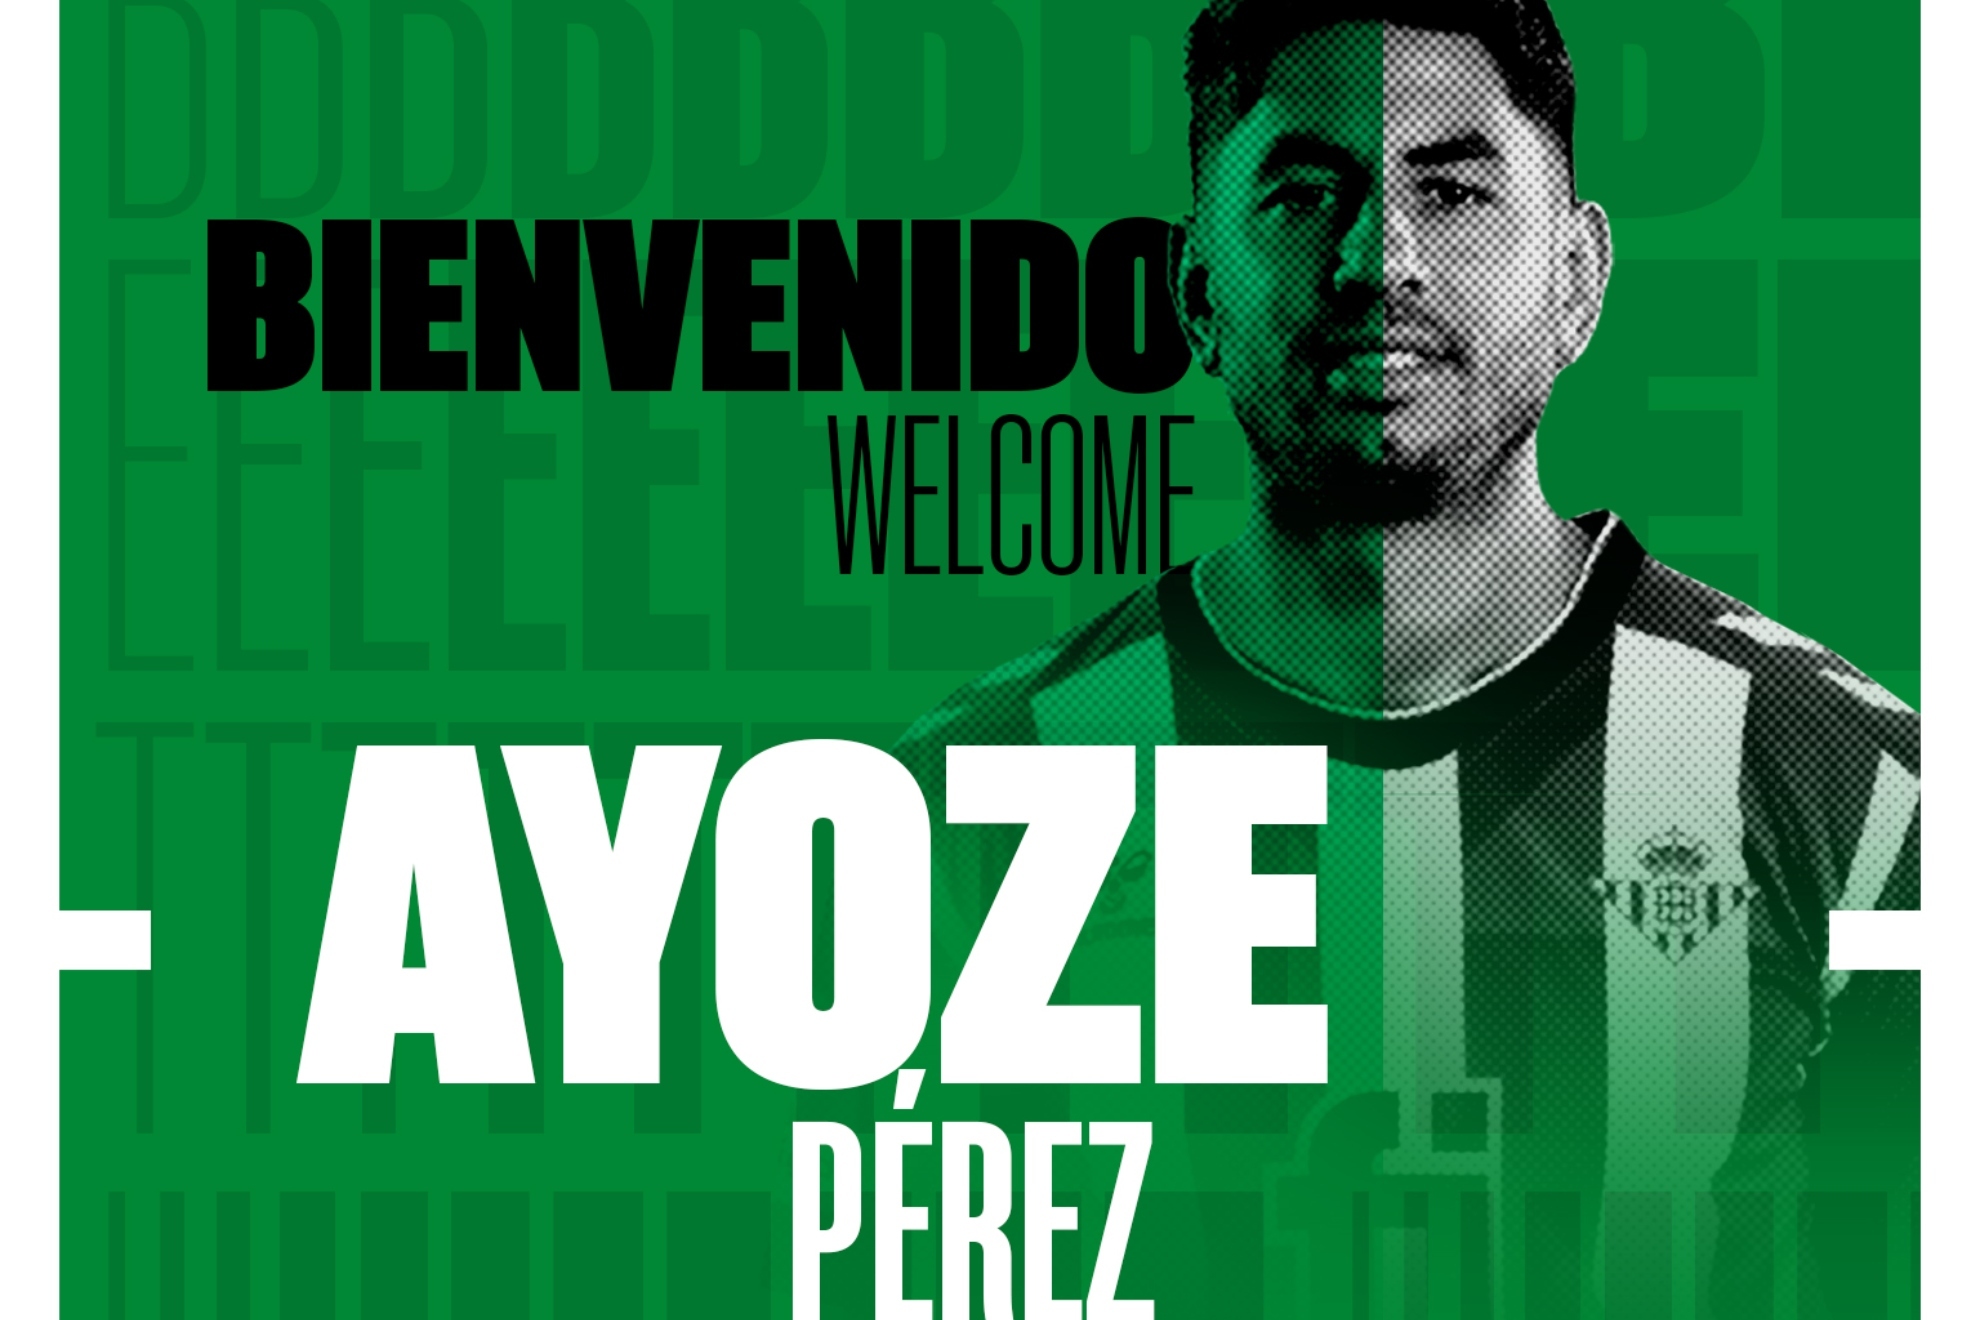 El Betis cierra el fichaje de Ayoze Prez hasta final de temporada